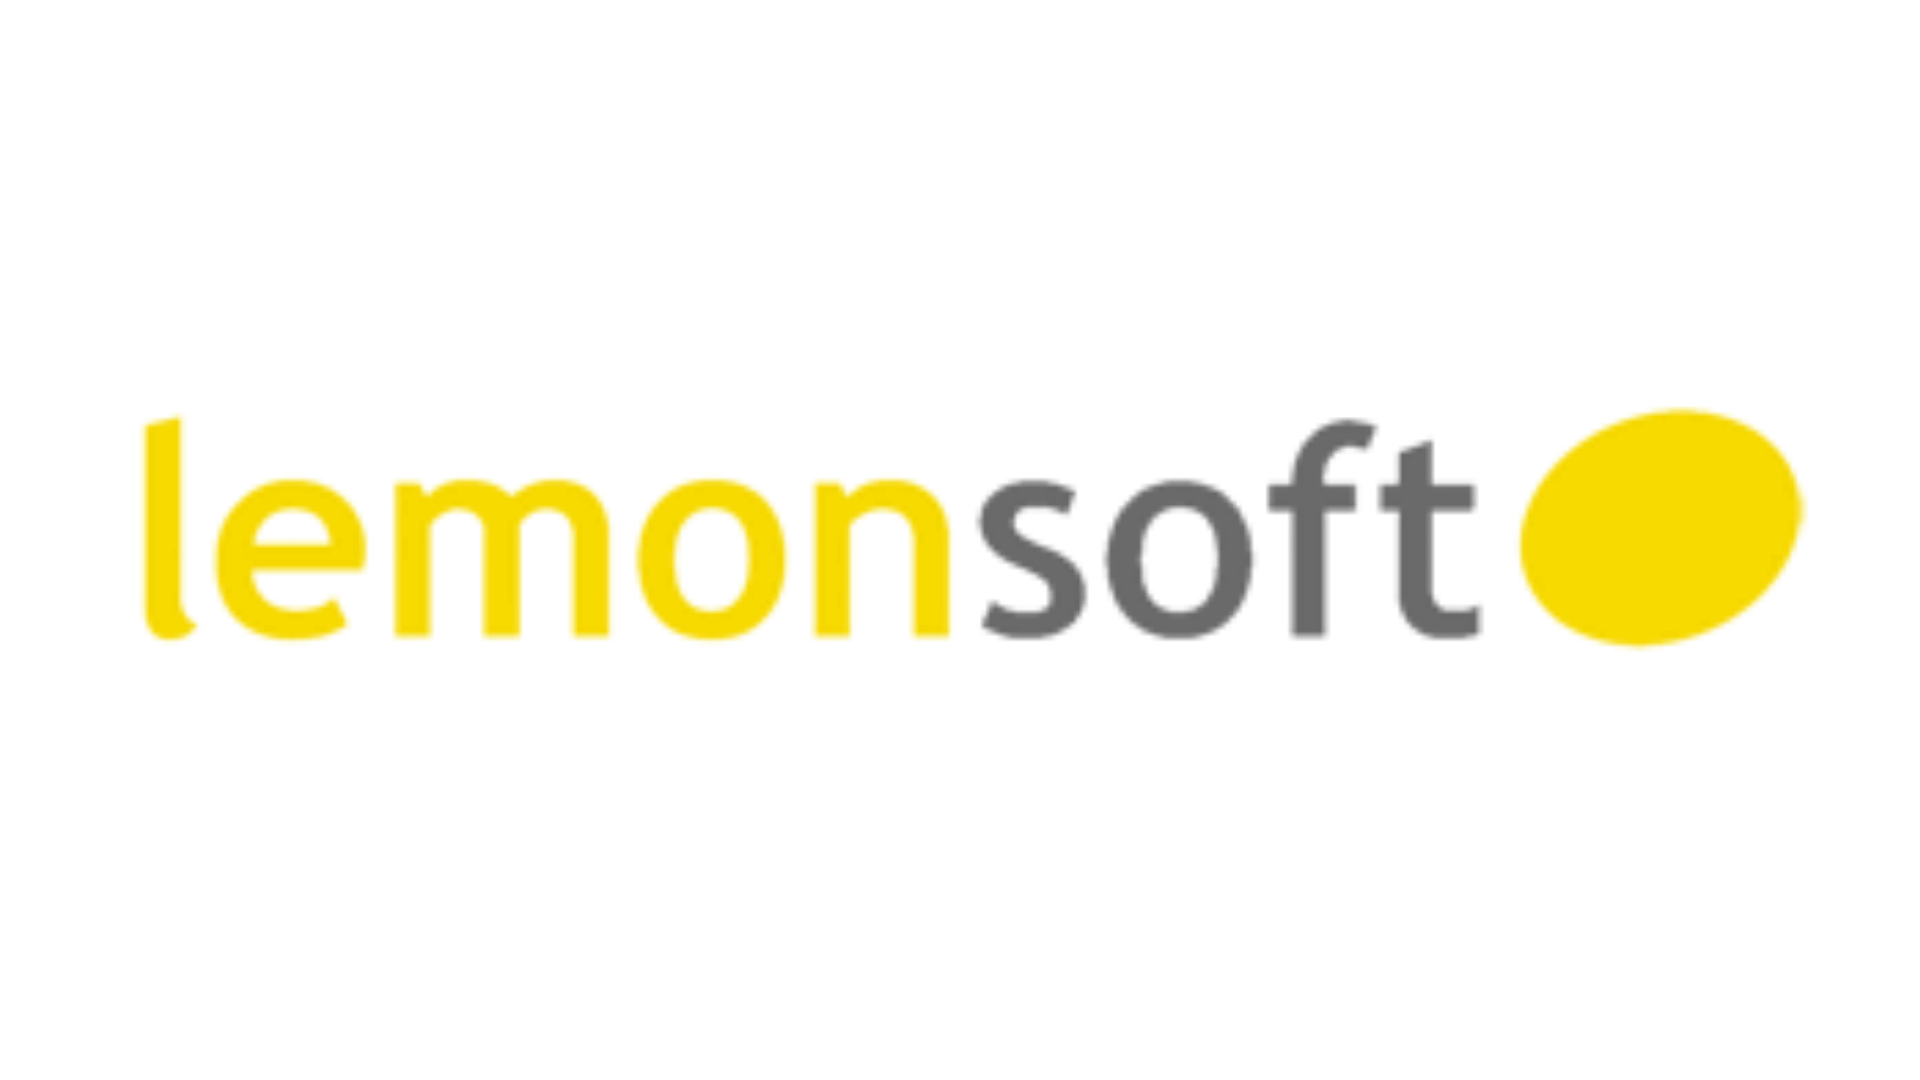 Lemonsoft-logo-1920x1080-1